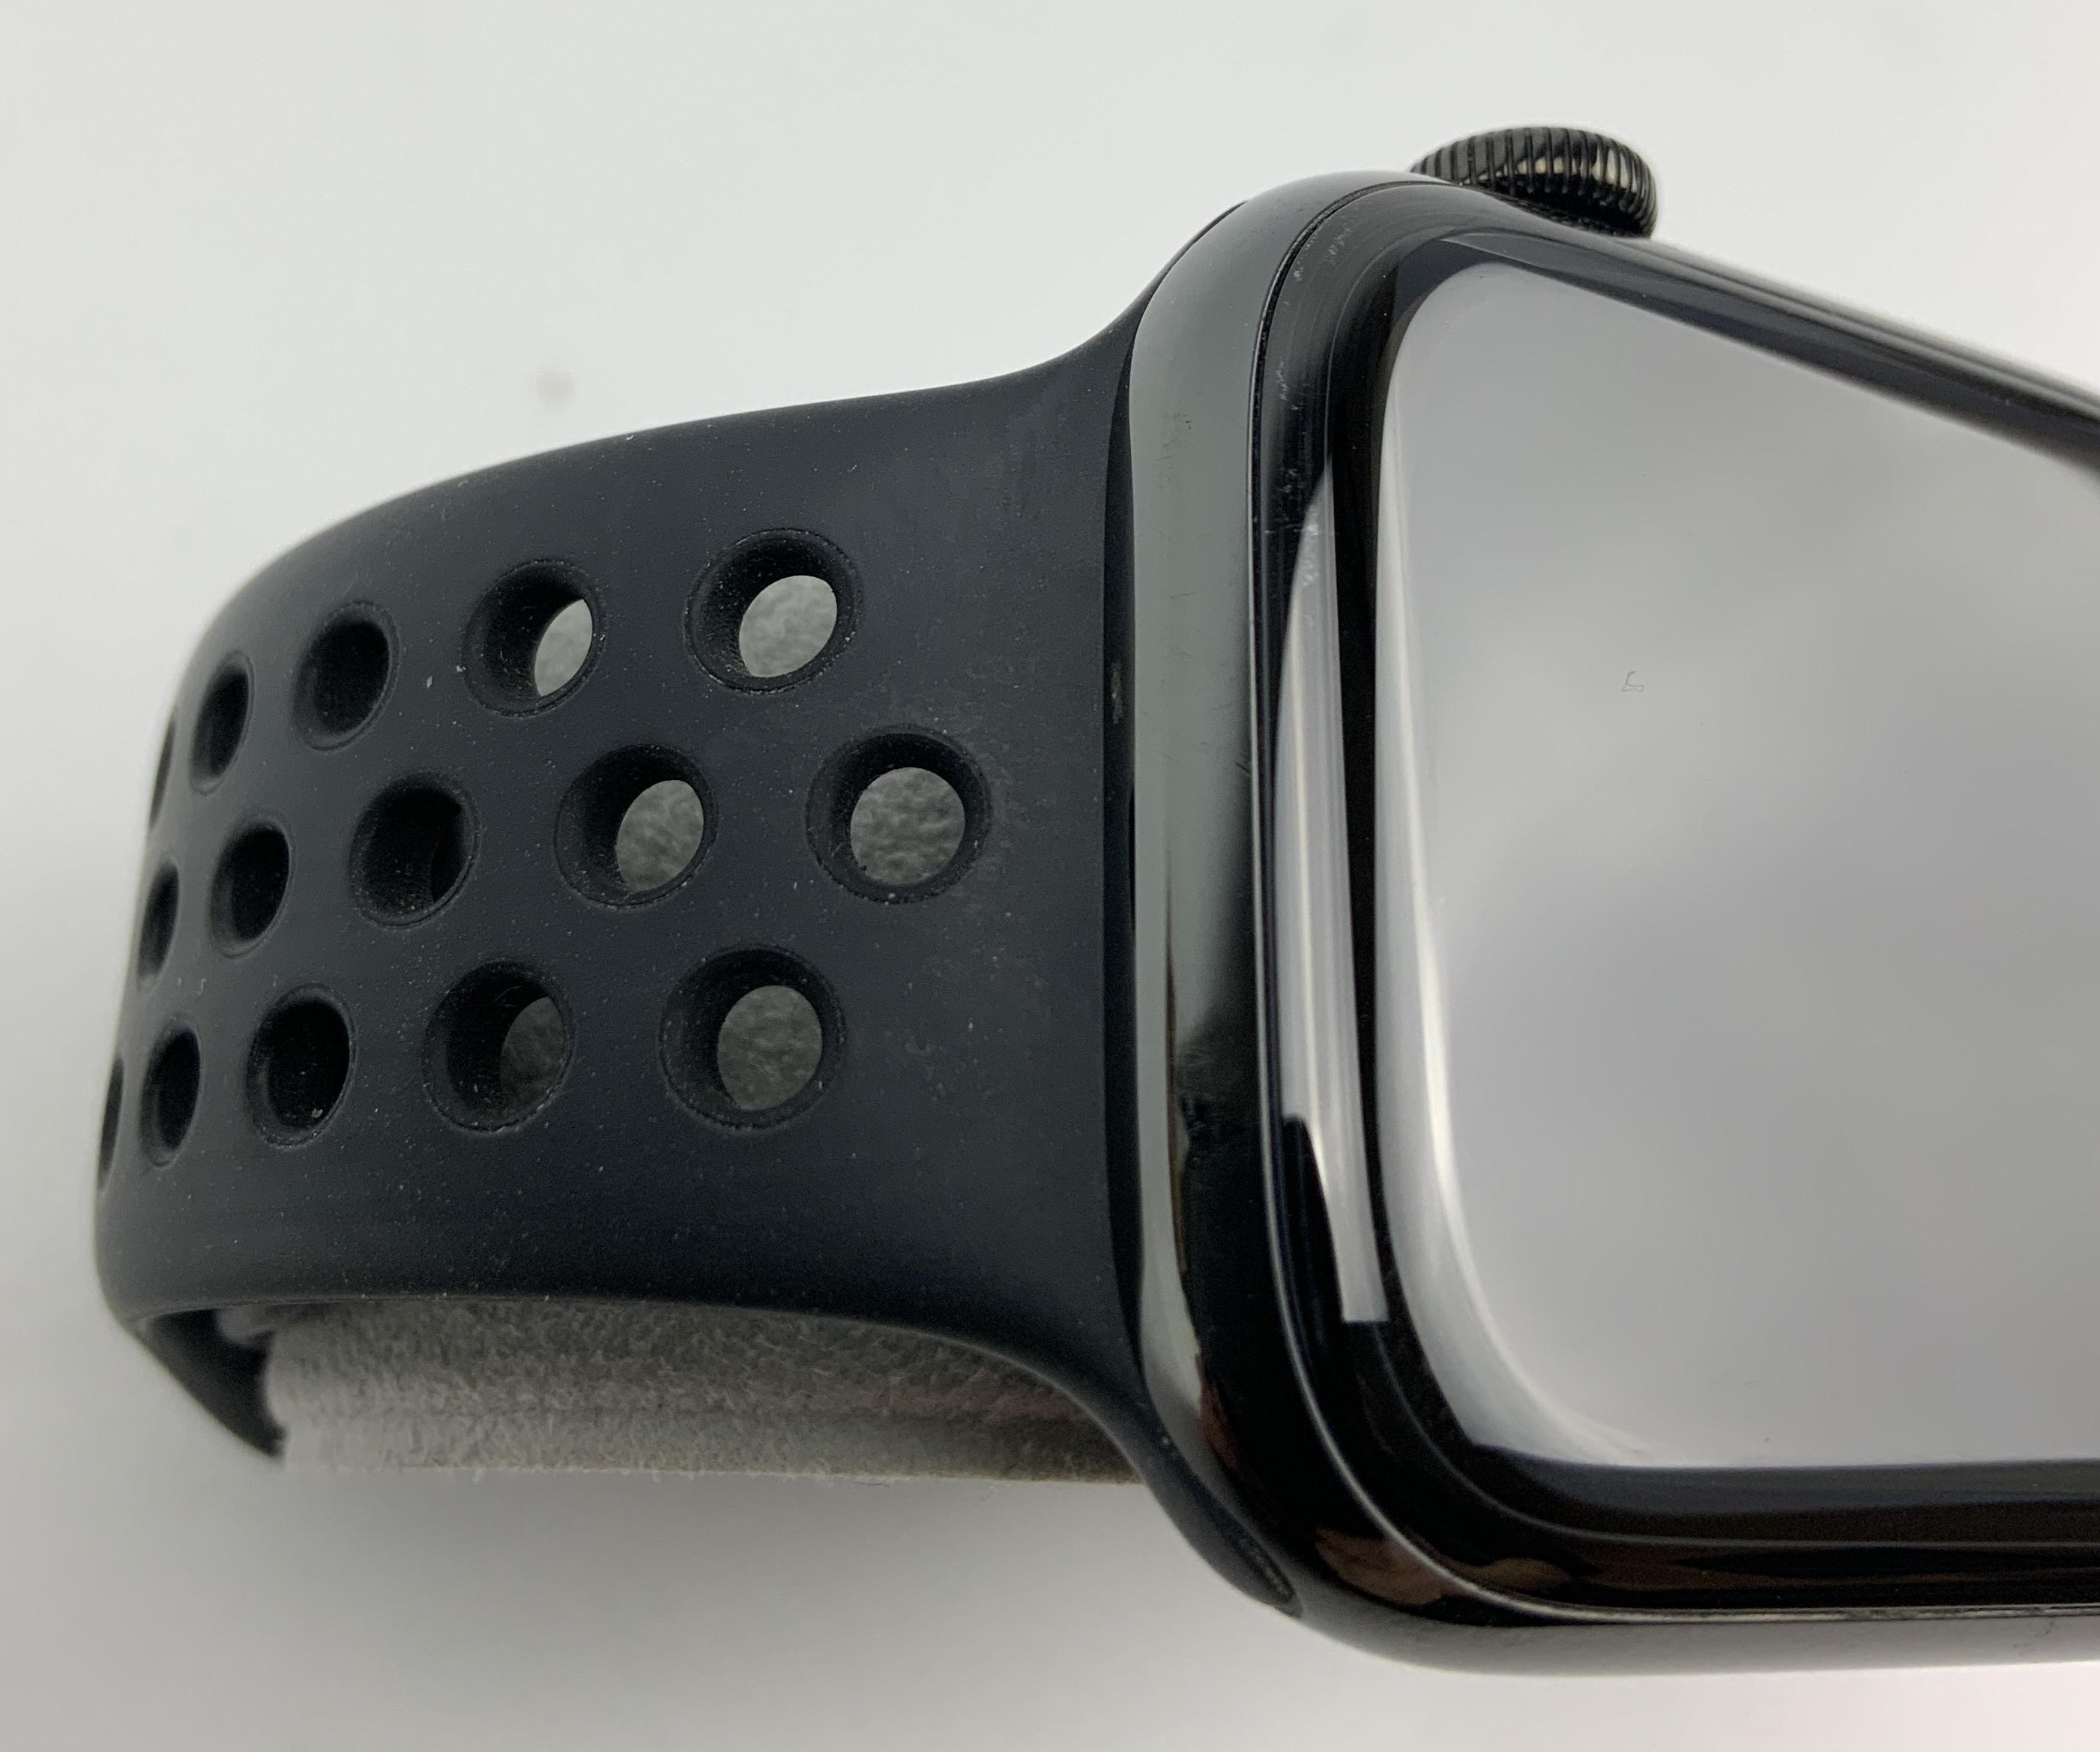 Watch Series 5 Steel Cellular (44mm), Space Black, bild 2